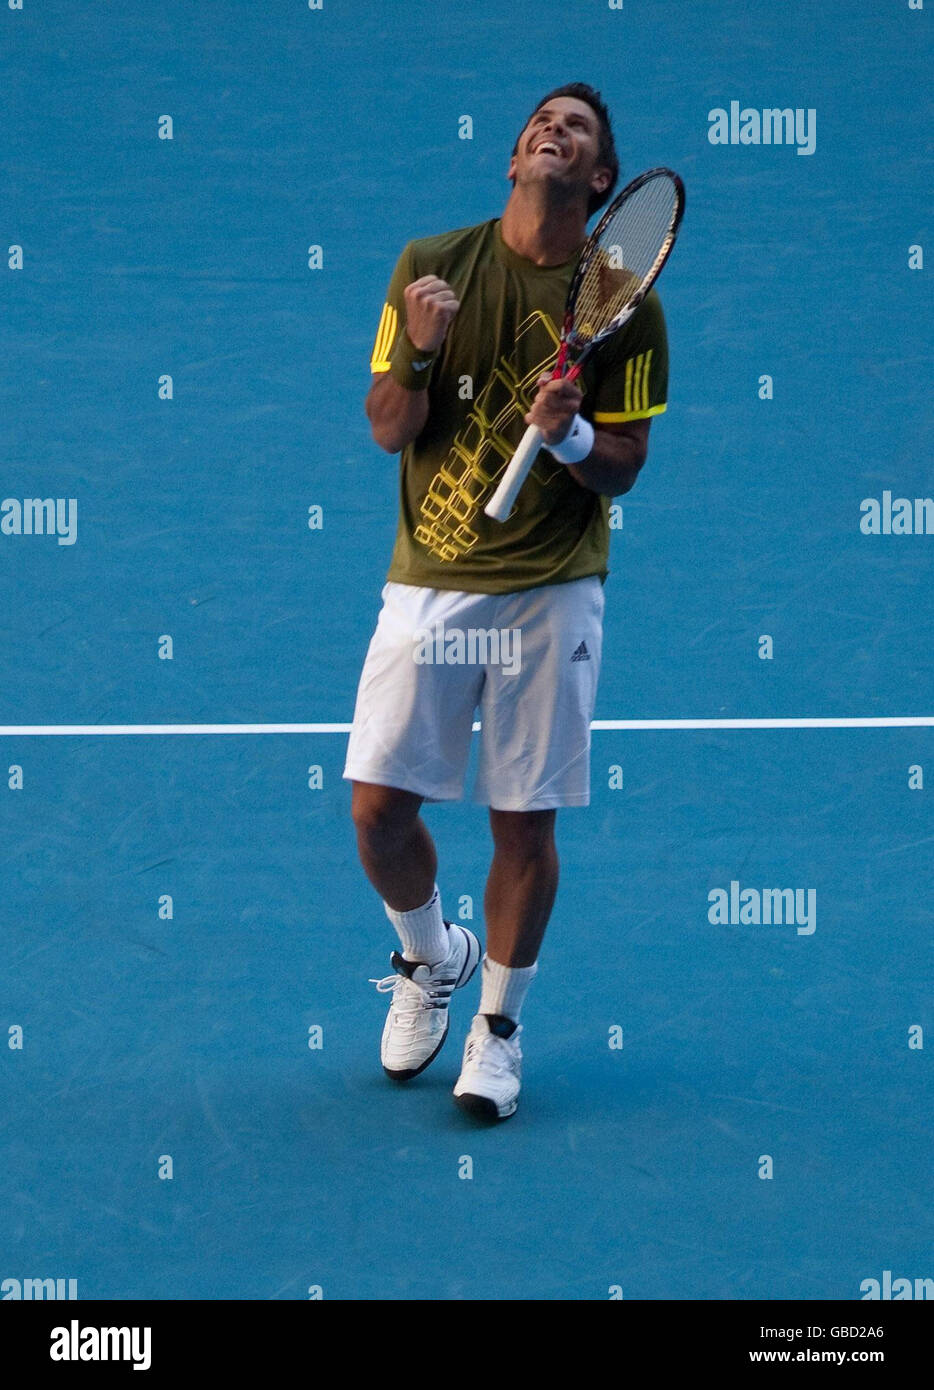 Fernando Verdasco, en Espagne, célèbre le passage devant Andy Murray, en Grande-Bretagne, lors de l'Open d'Australie 2009 à Melbourne Park, Melbourne, en Australie. Banque D'Images